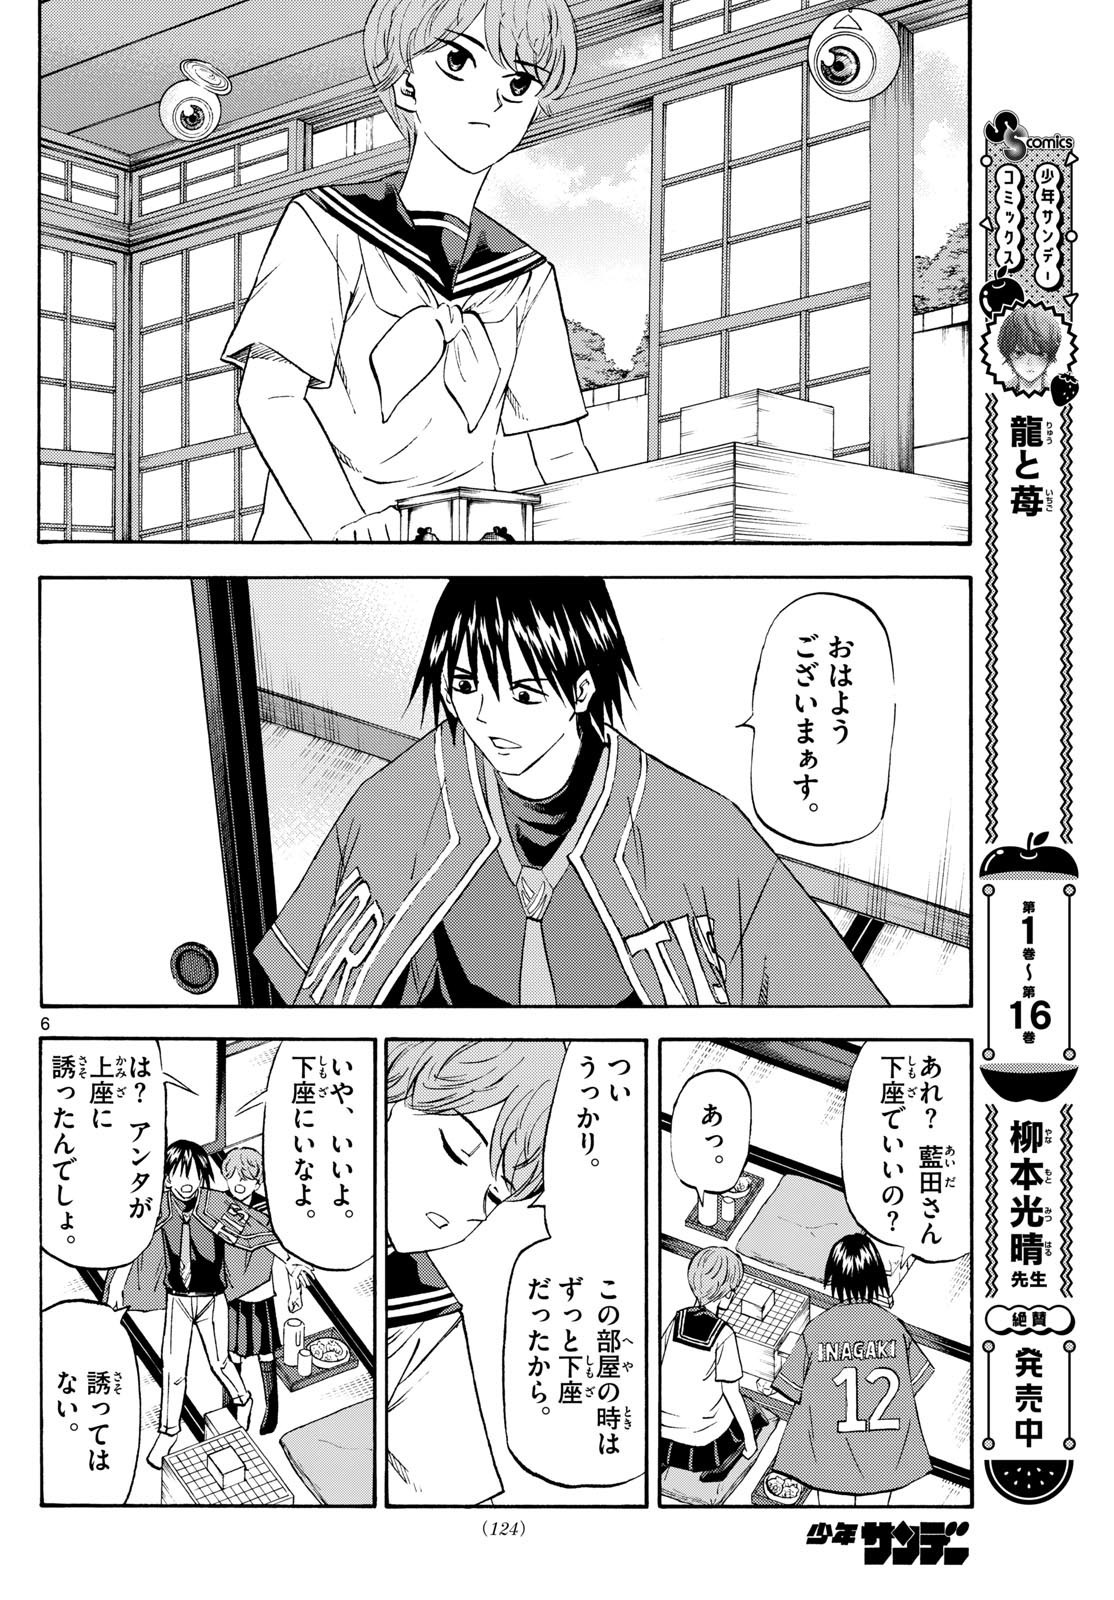 Ryu-to-Ichigo - Chapter 197 - Page 6